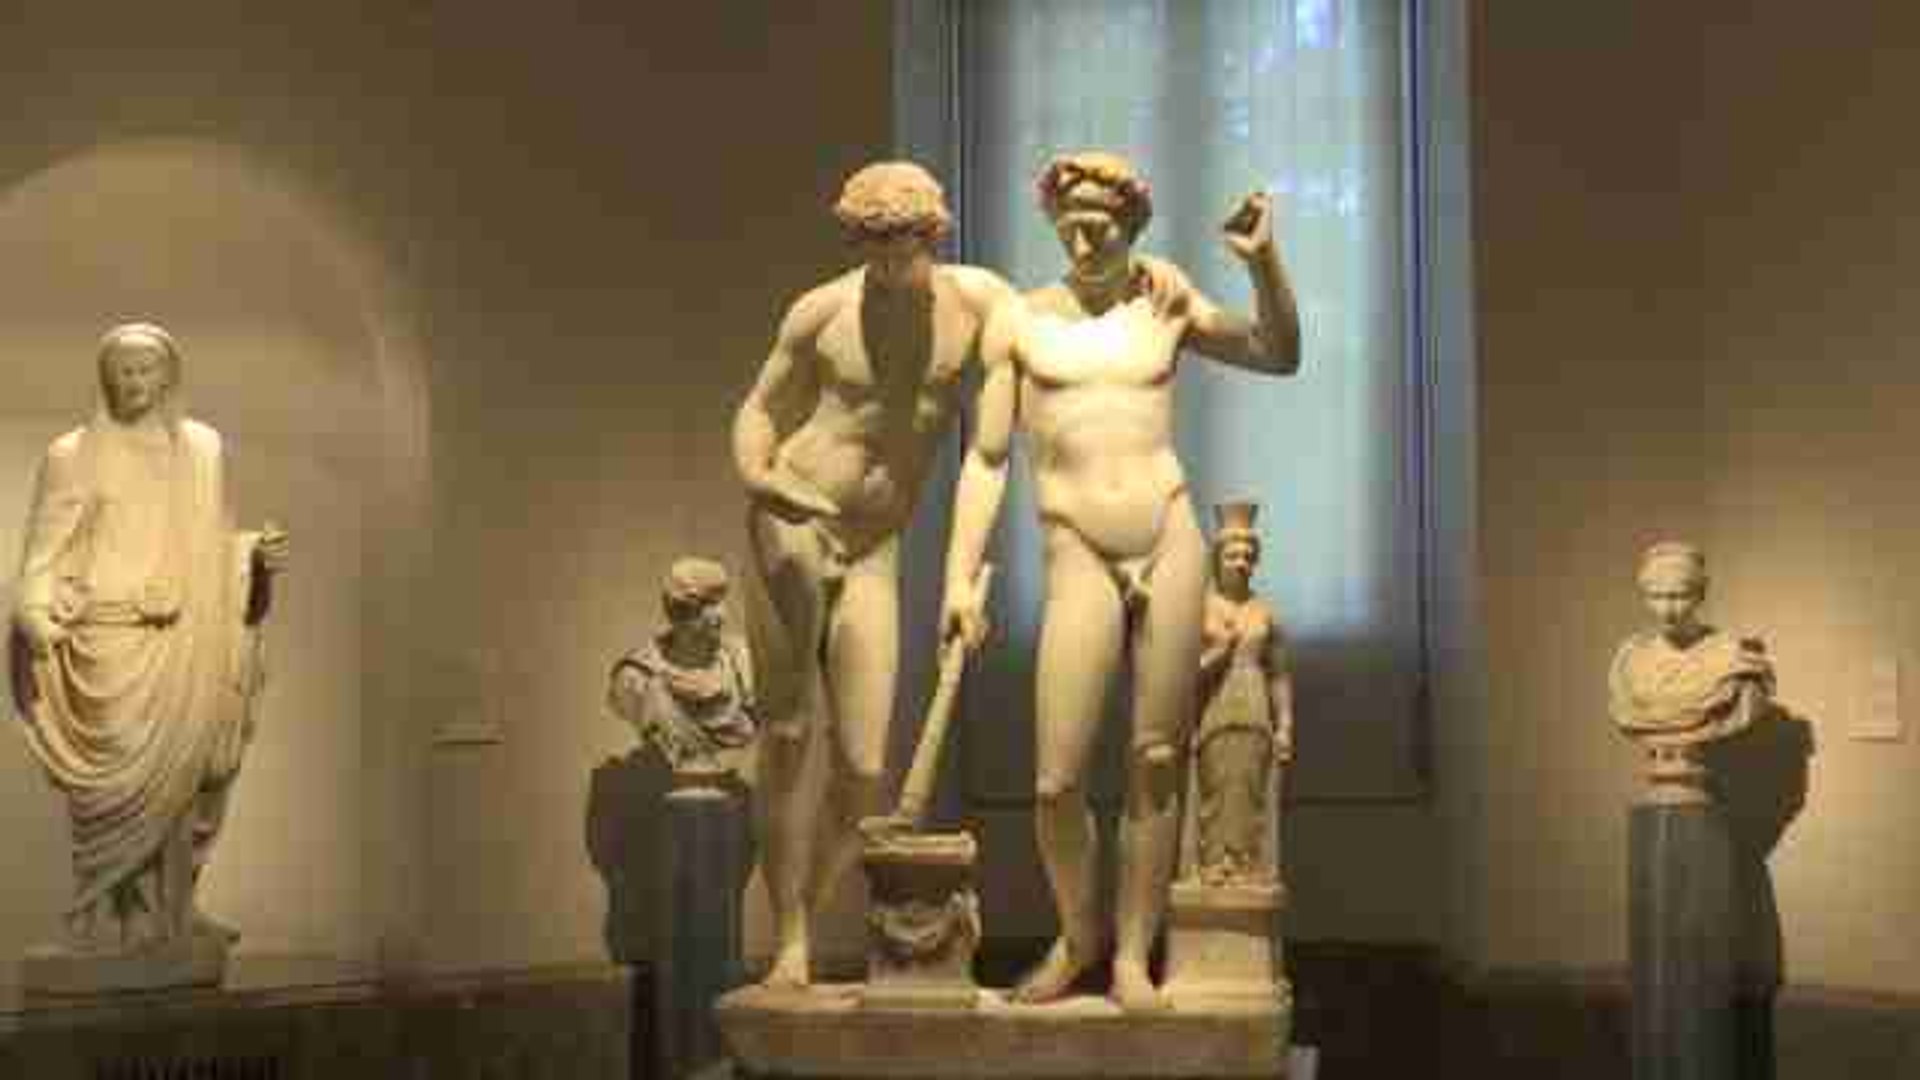 El Museo del Prado organiza una muestra de arte sobre homosexualidad - Vídeo Dailymotion